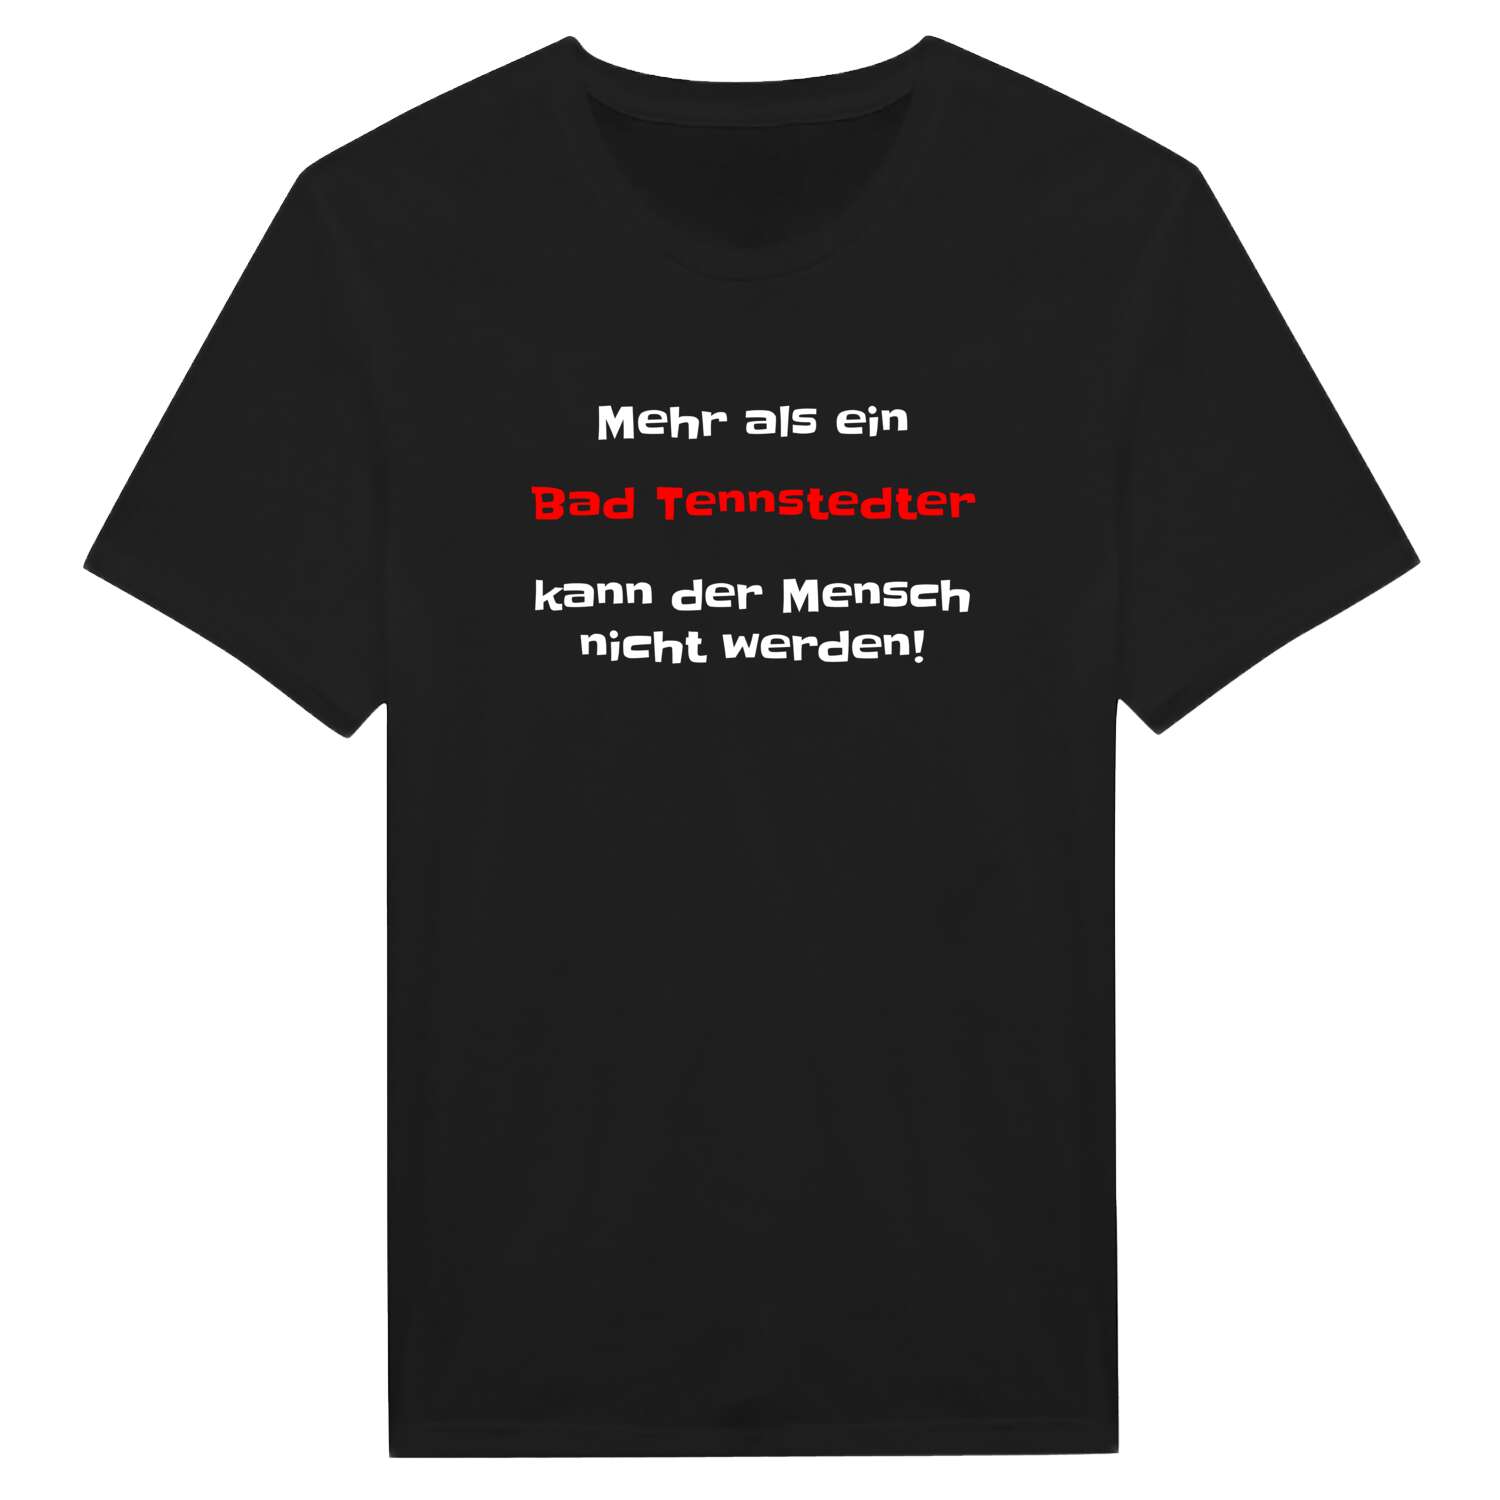 Bad Tennstedt T-Shirt »Mehr als ein«